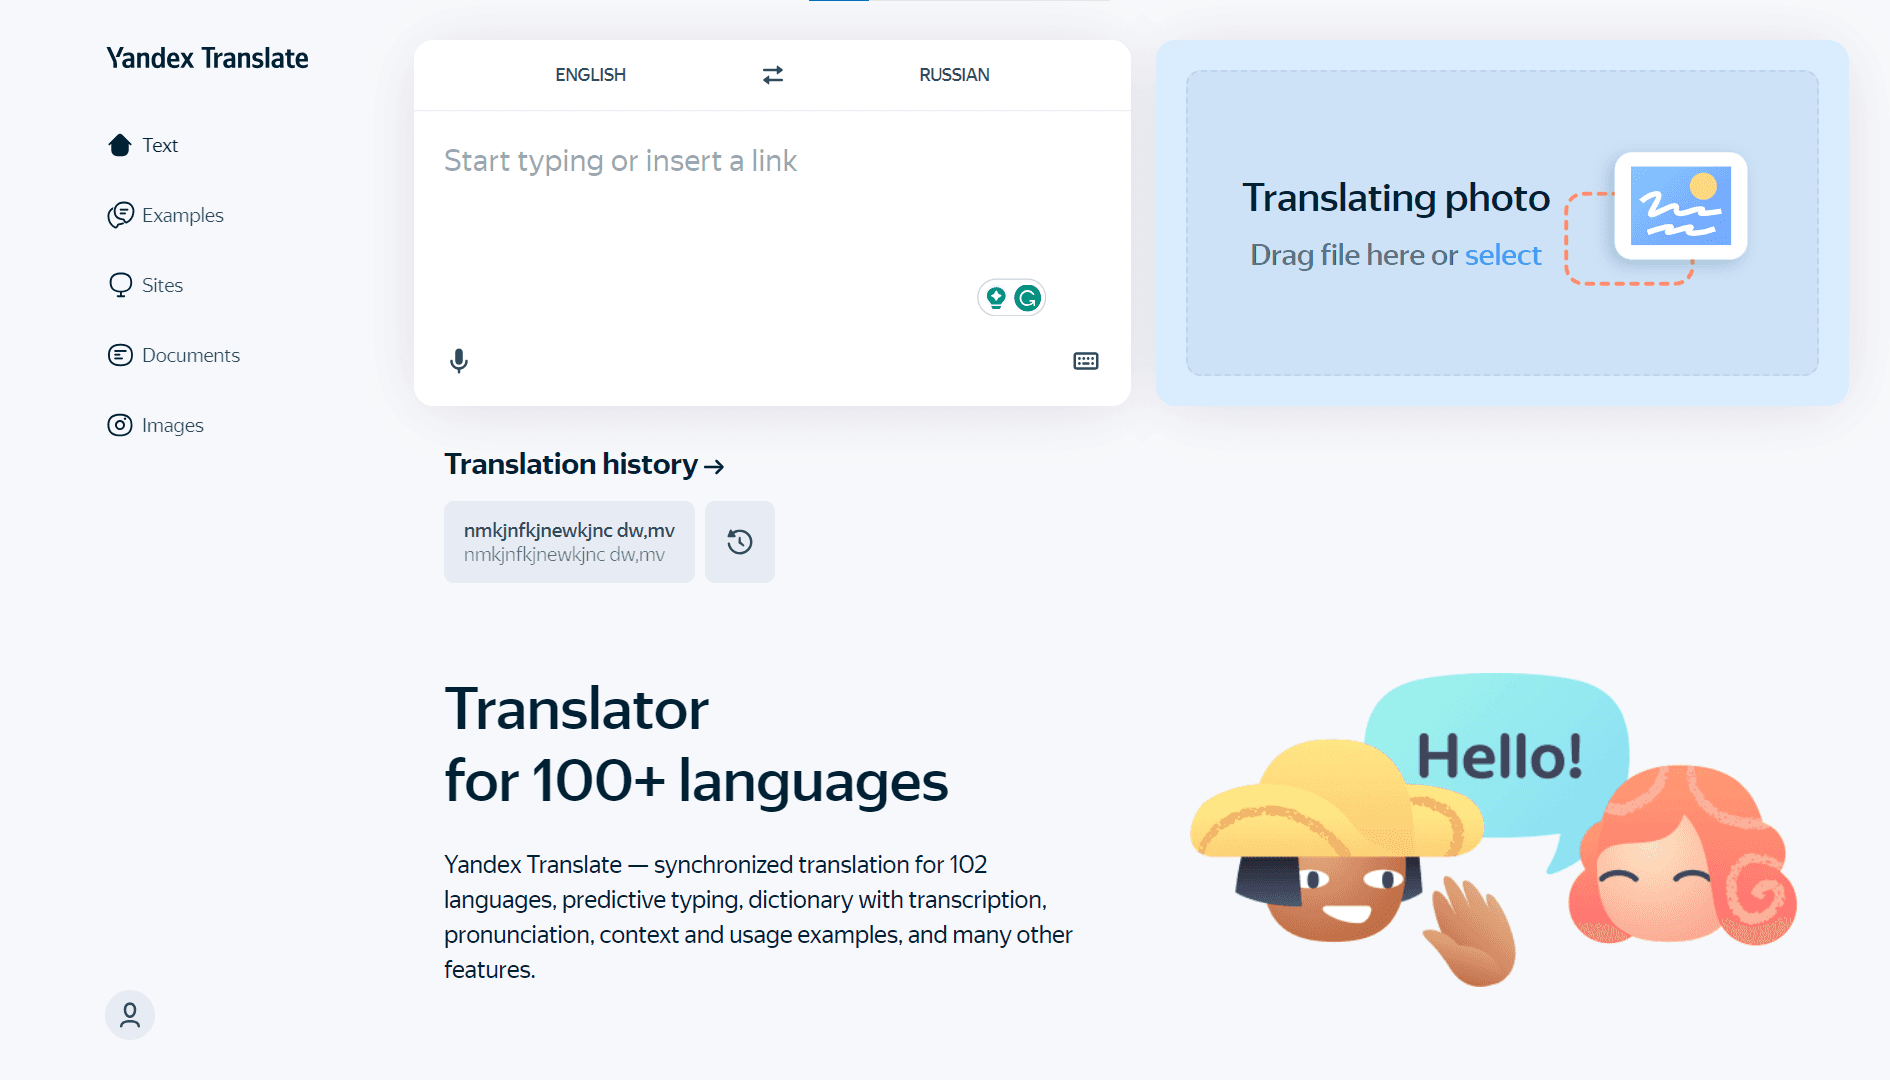 Yandex Translate Tool Image 1